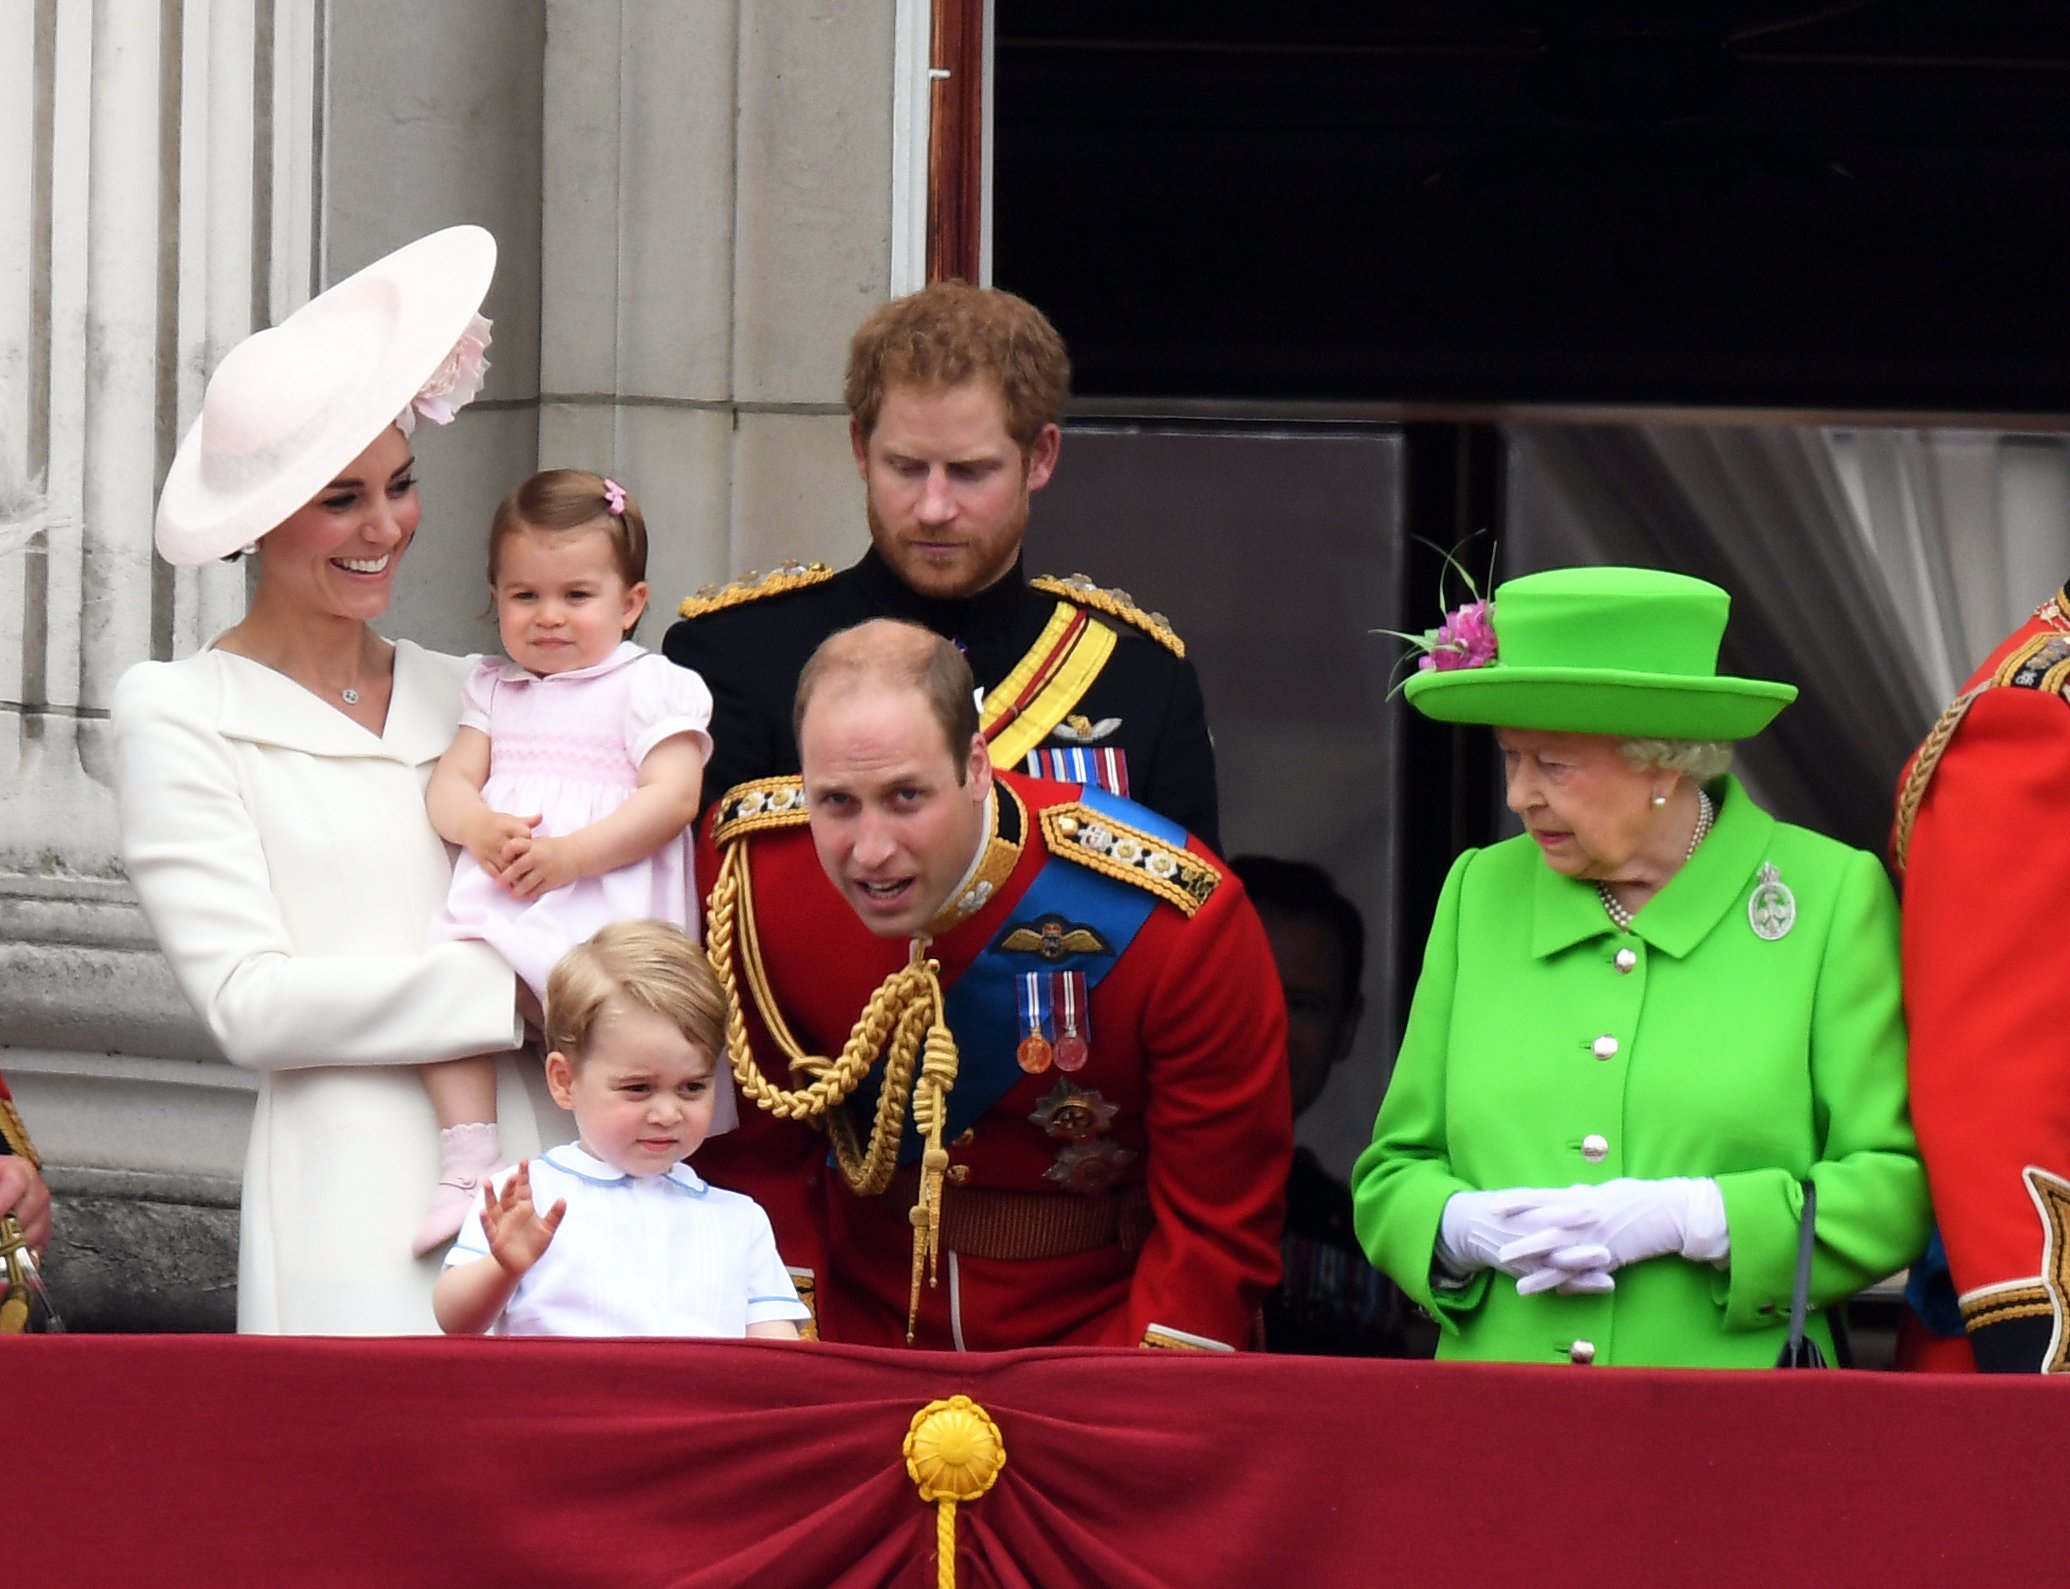 Herzogin Kate, Prinzessin Charlotte, Prinz George, Prinz William, Prinz Harry und Königin Elizabeth II. auf dem Balkon des Buckingham Palasts nach der "Trooping the Colour"-Zeremonie am 11. Juni 2016 in London, England | Quelle: Getty Images